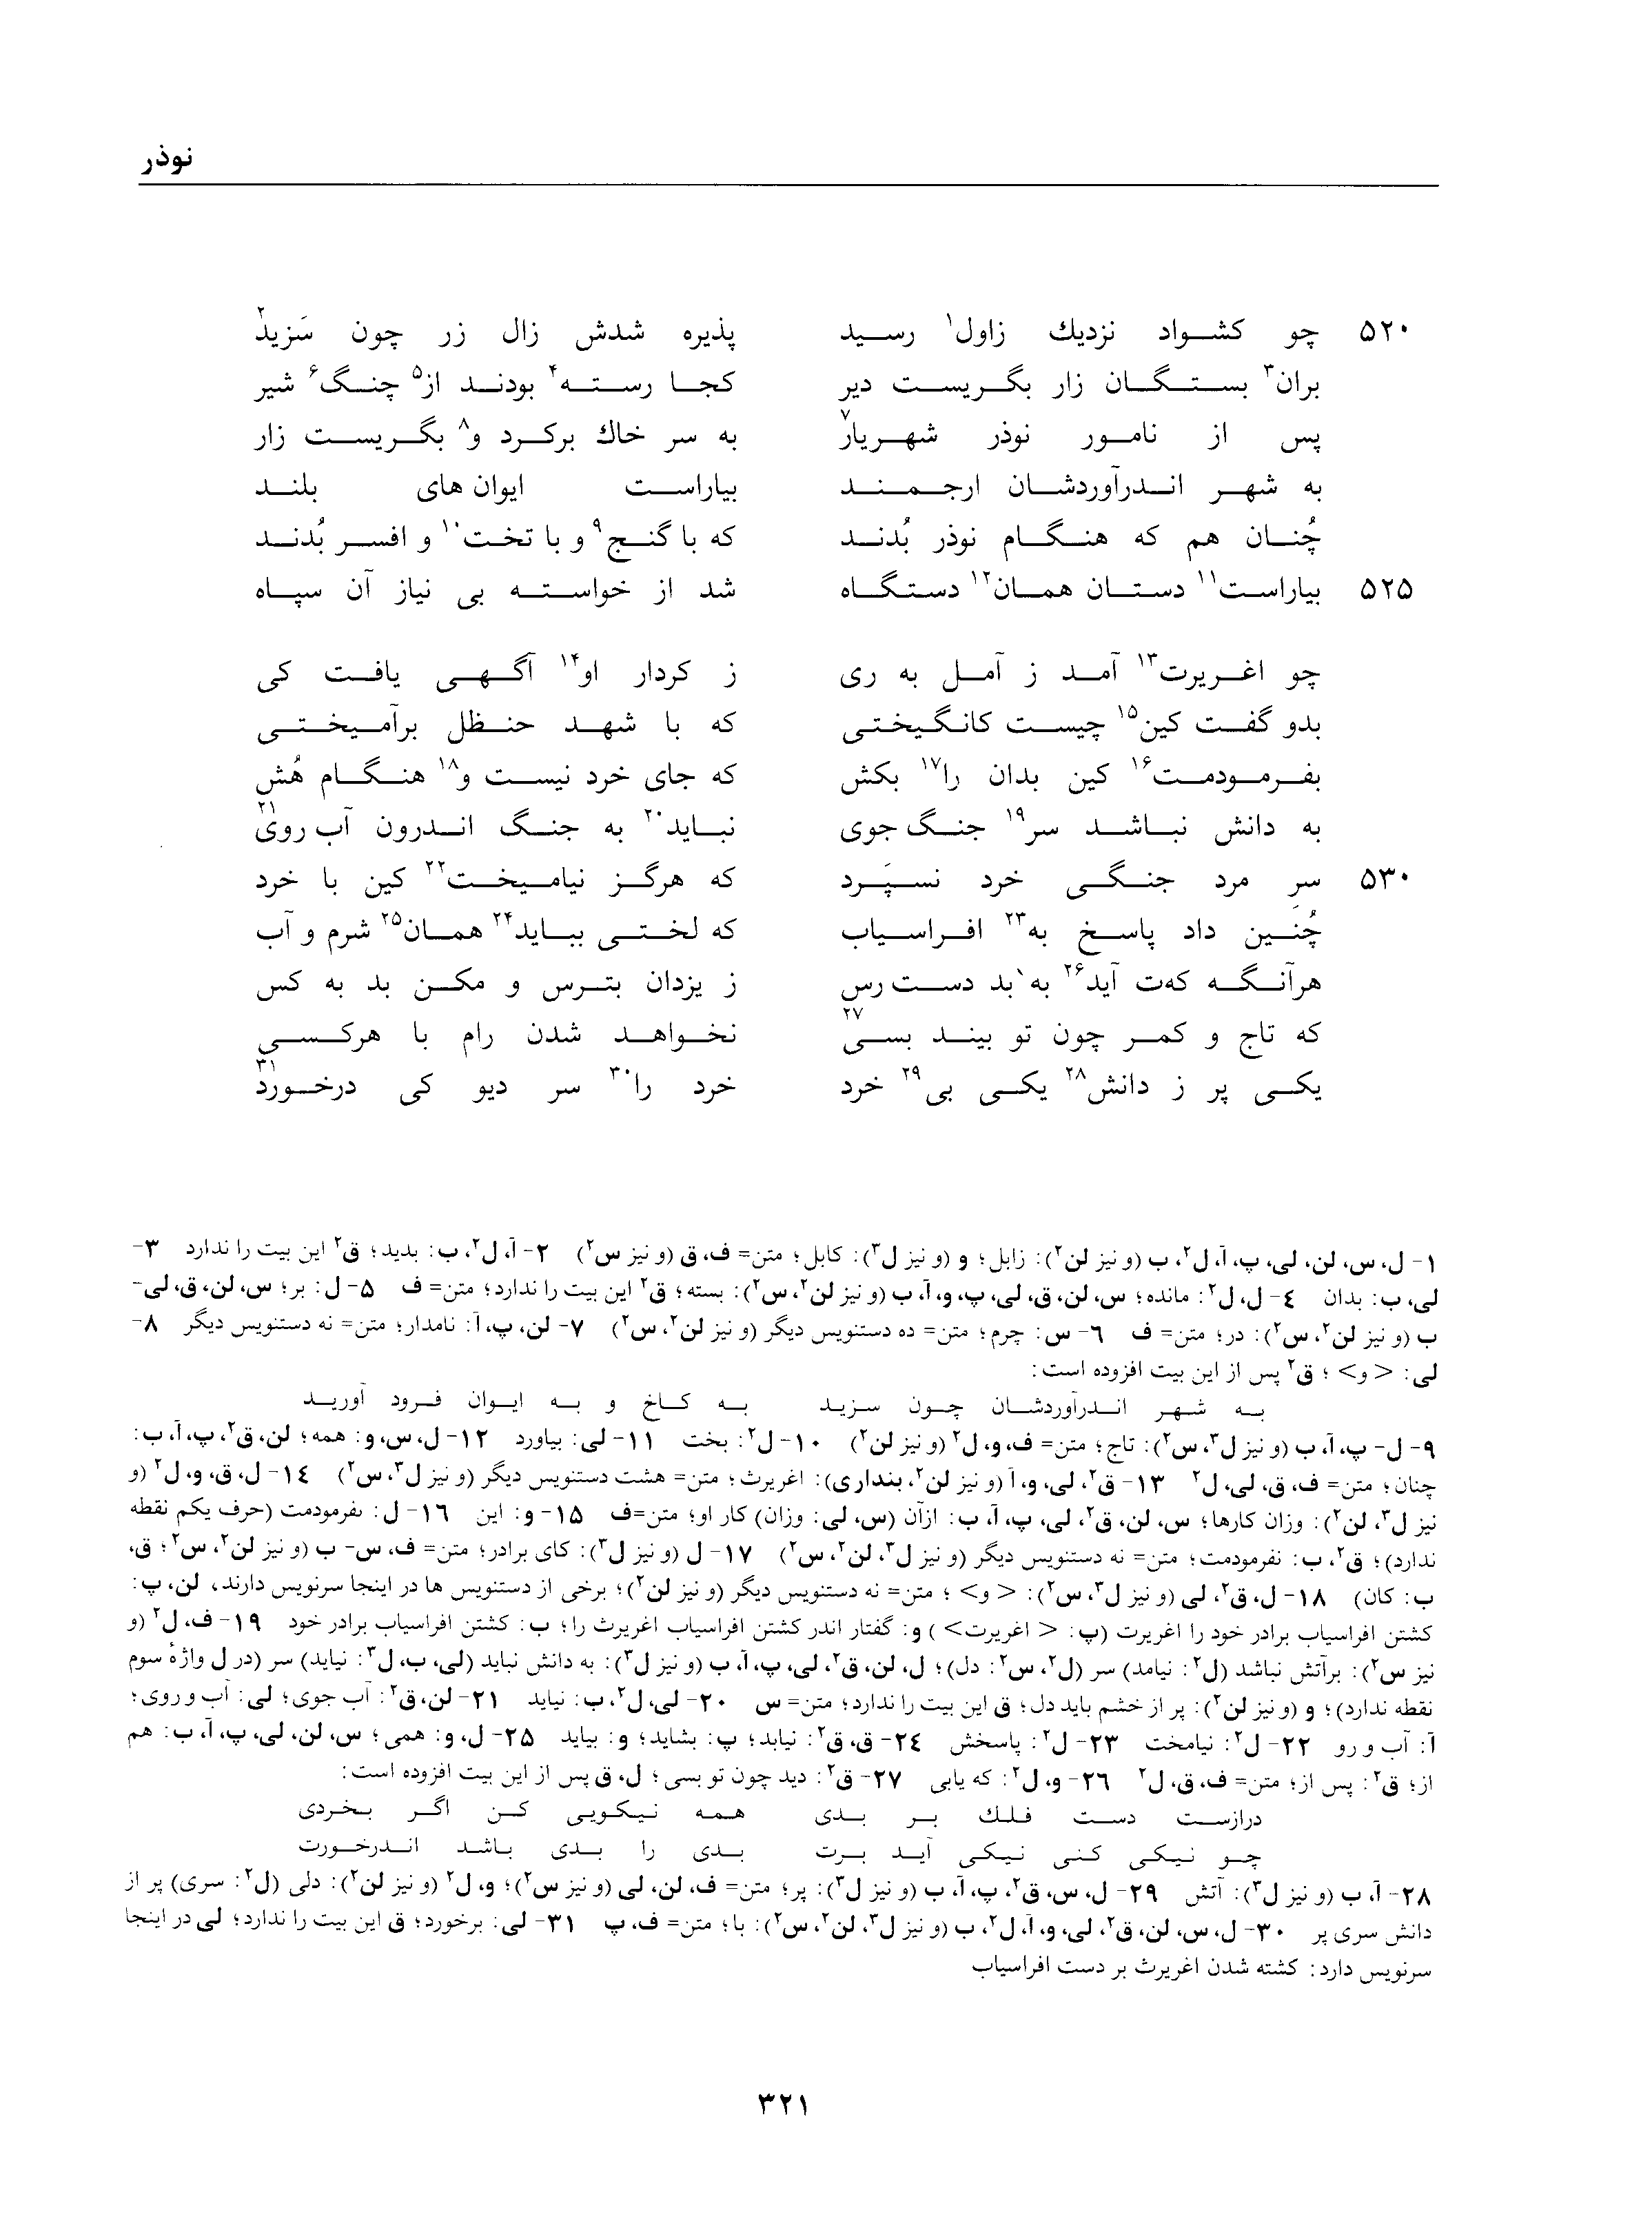 vol. 1, p. 321